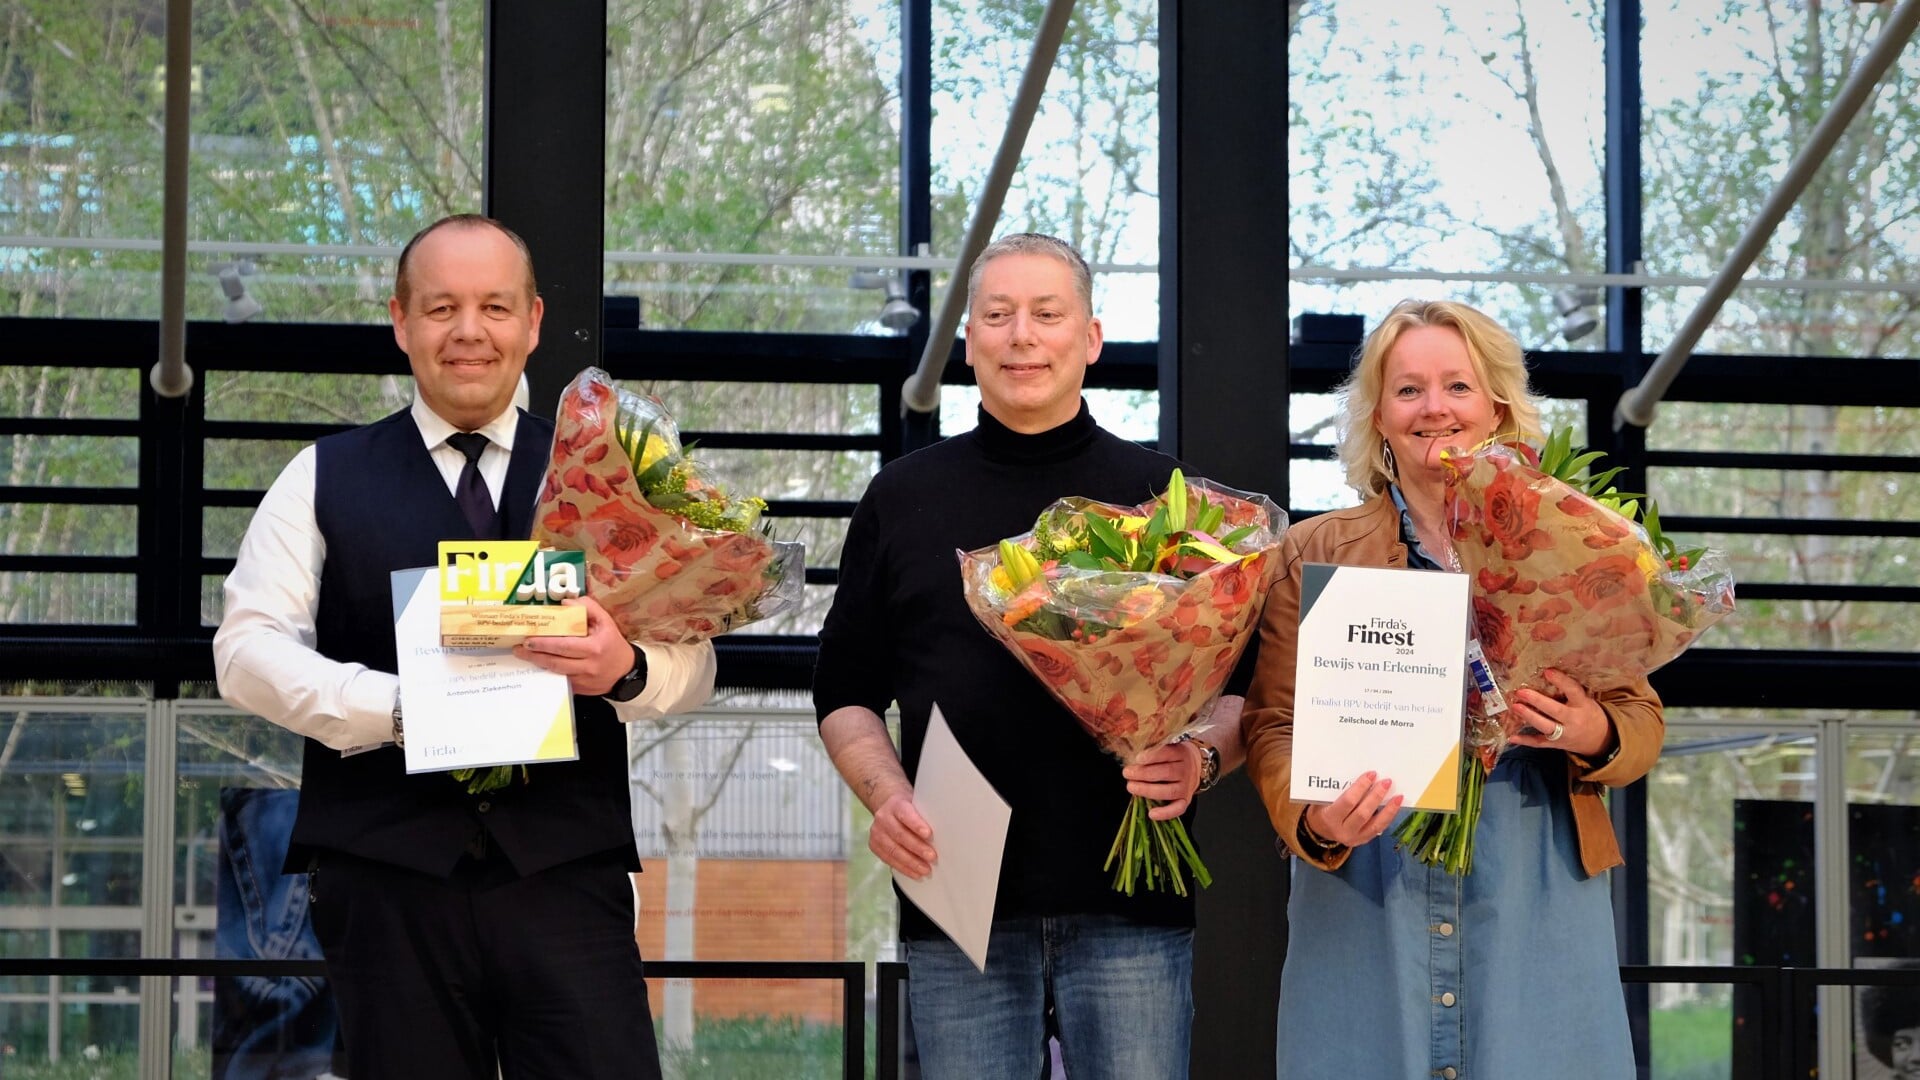 Mooie awards Firda voor studente en Antonius Ziekenhuis in Sneek